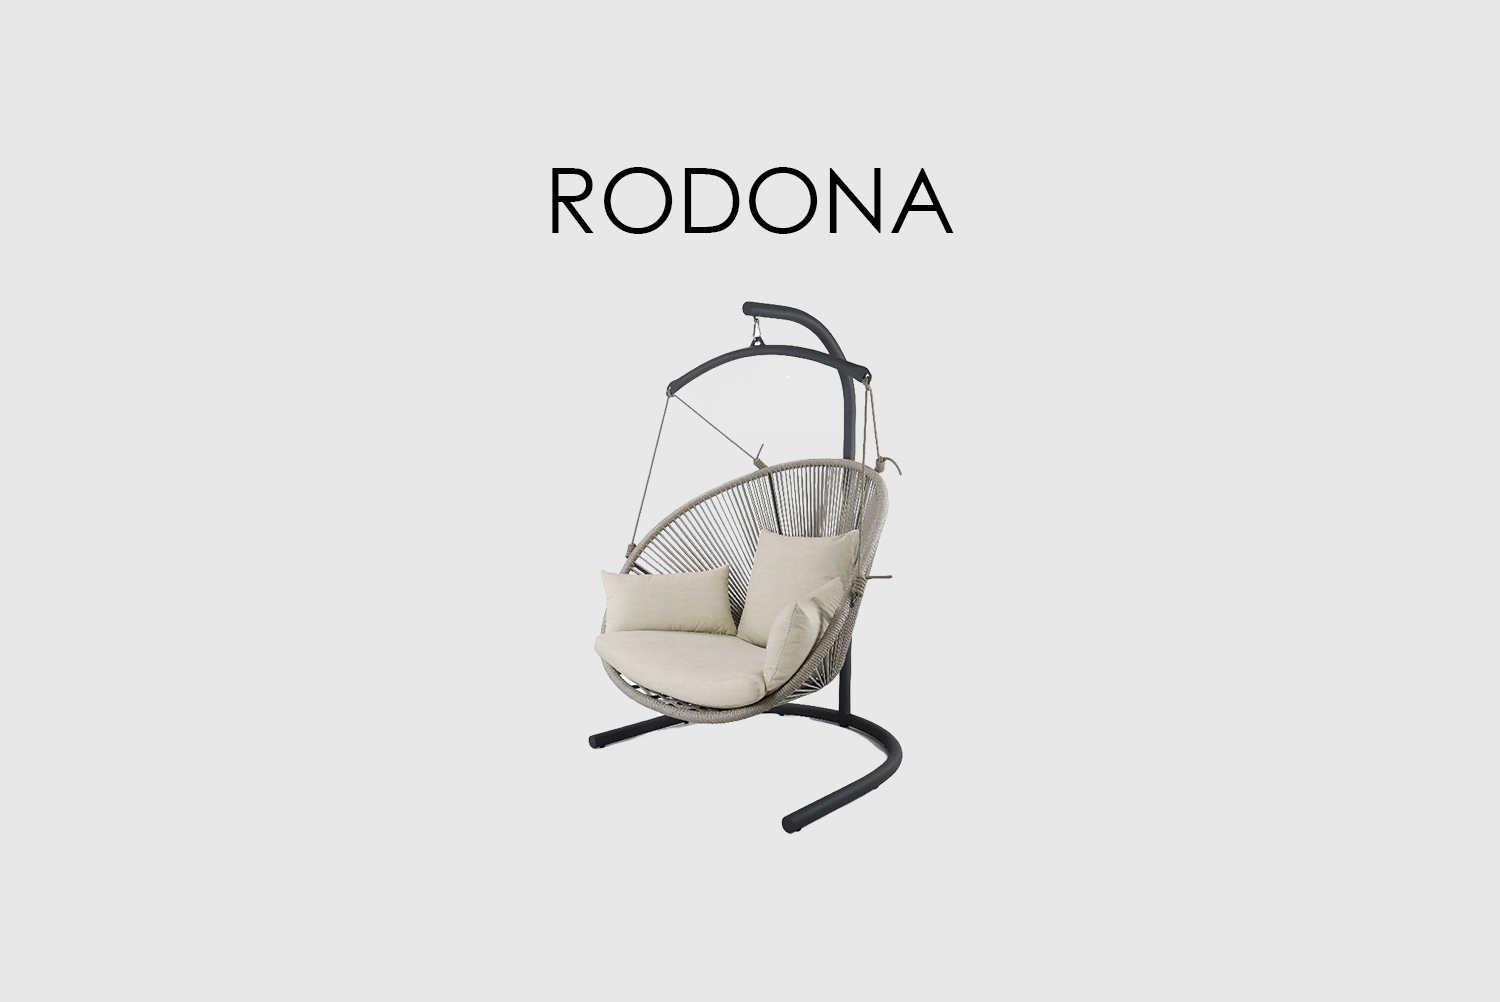 Подвесное кресло Rodono